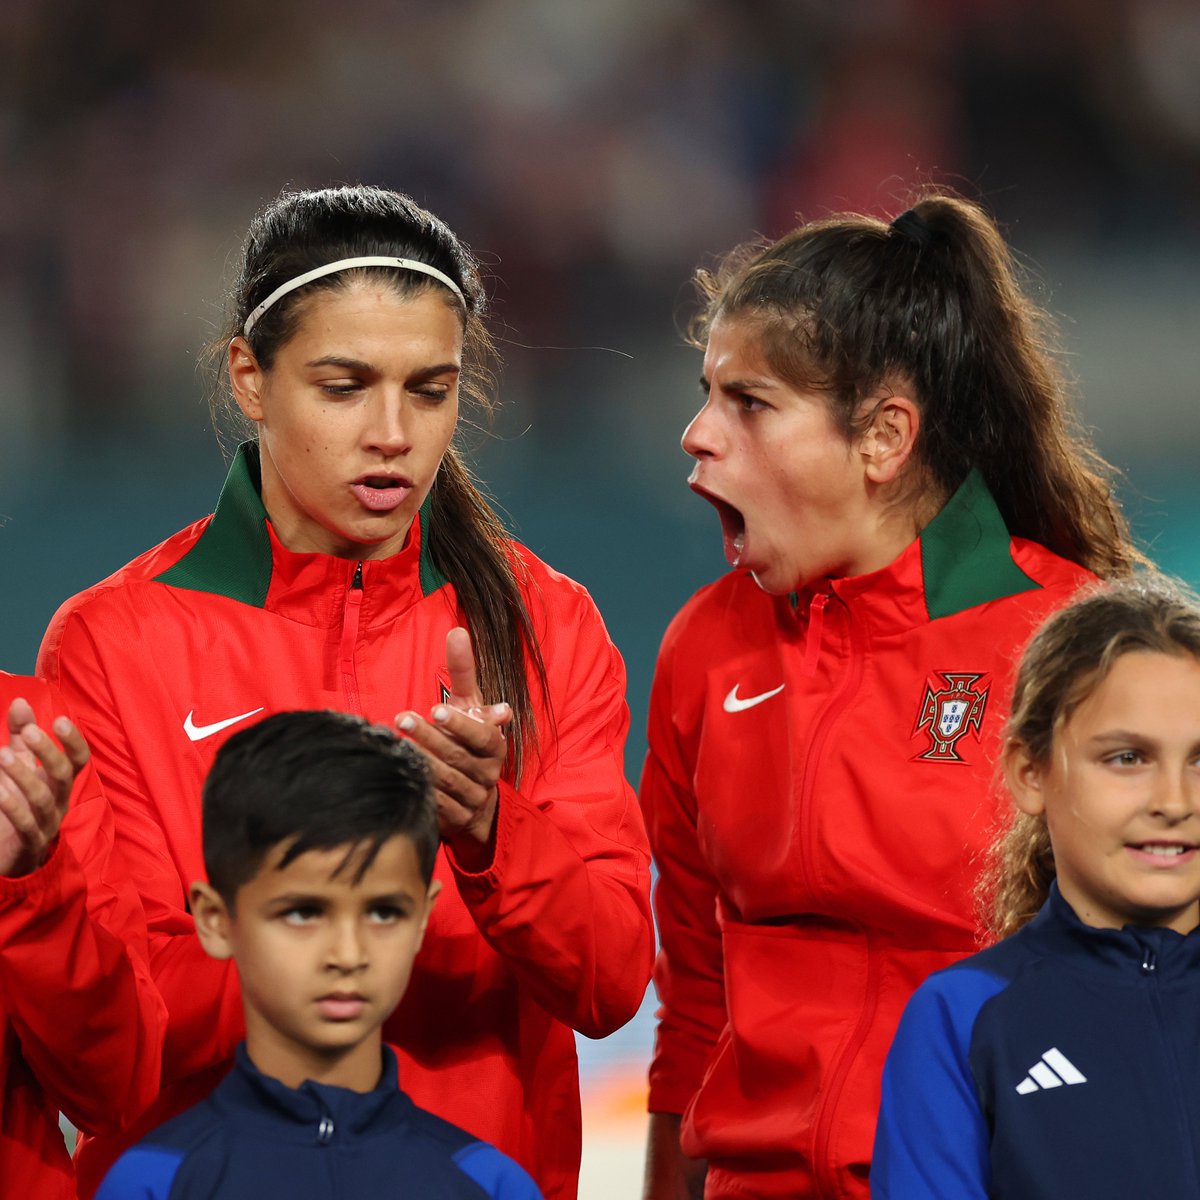 O orgulho de um país! As navegadoras representaram Portugal até o fim 🇵🇹 #FIFAWWC